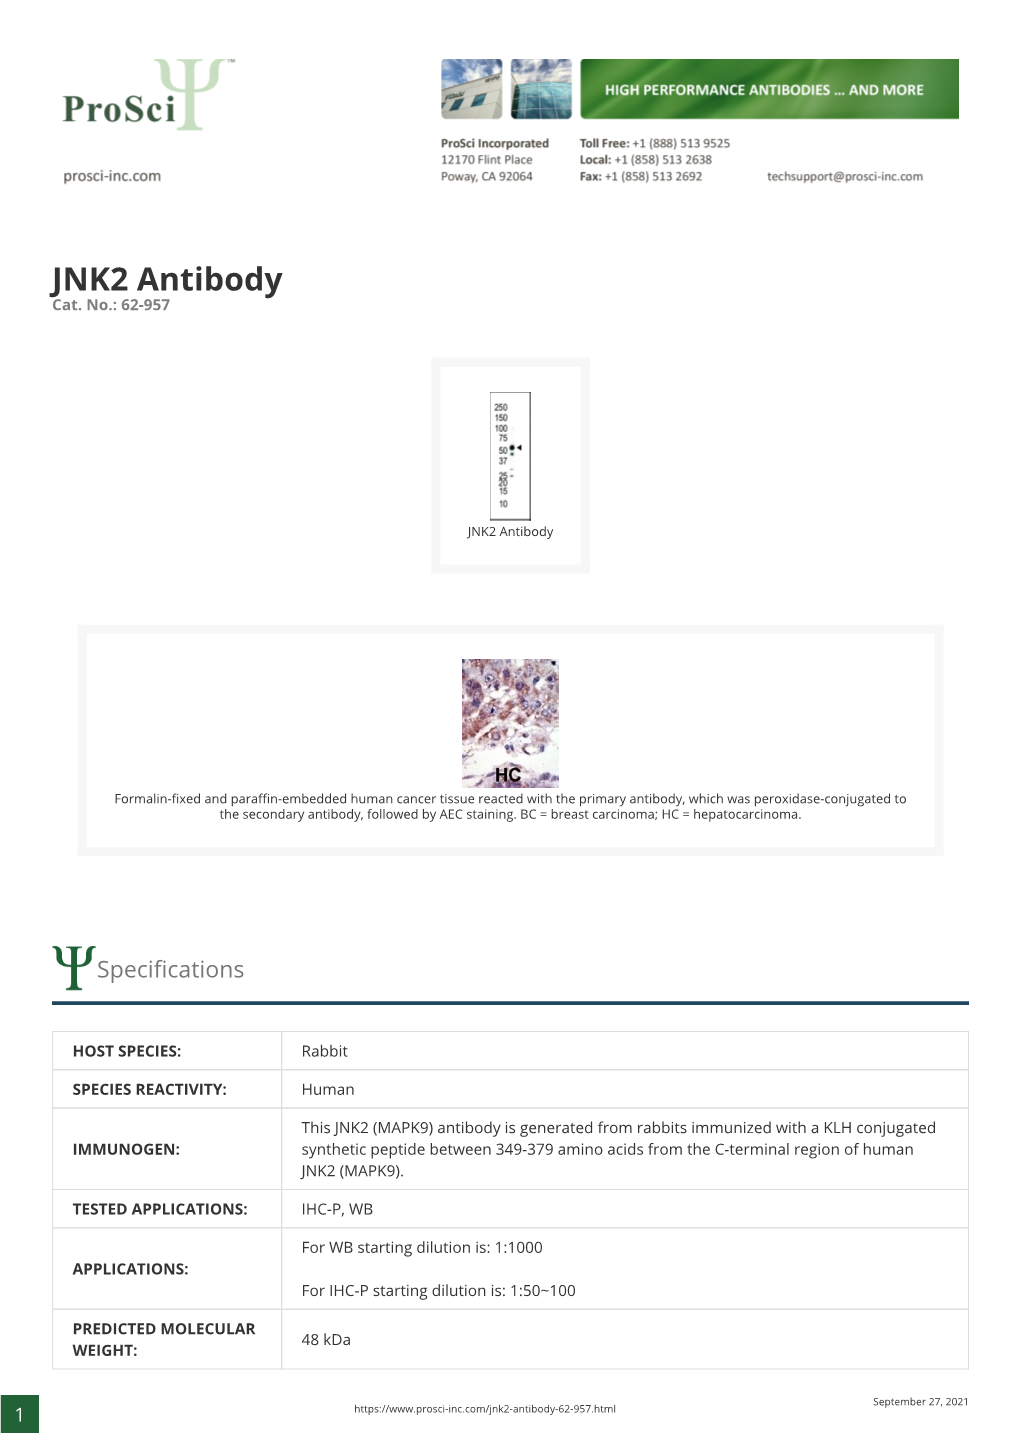 JNK2 Antibody Cat